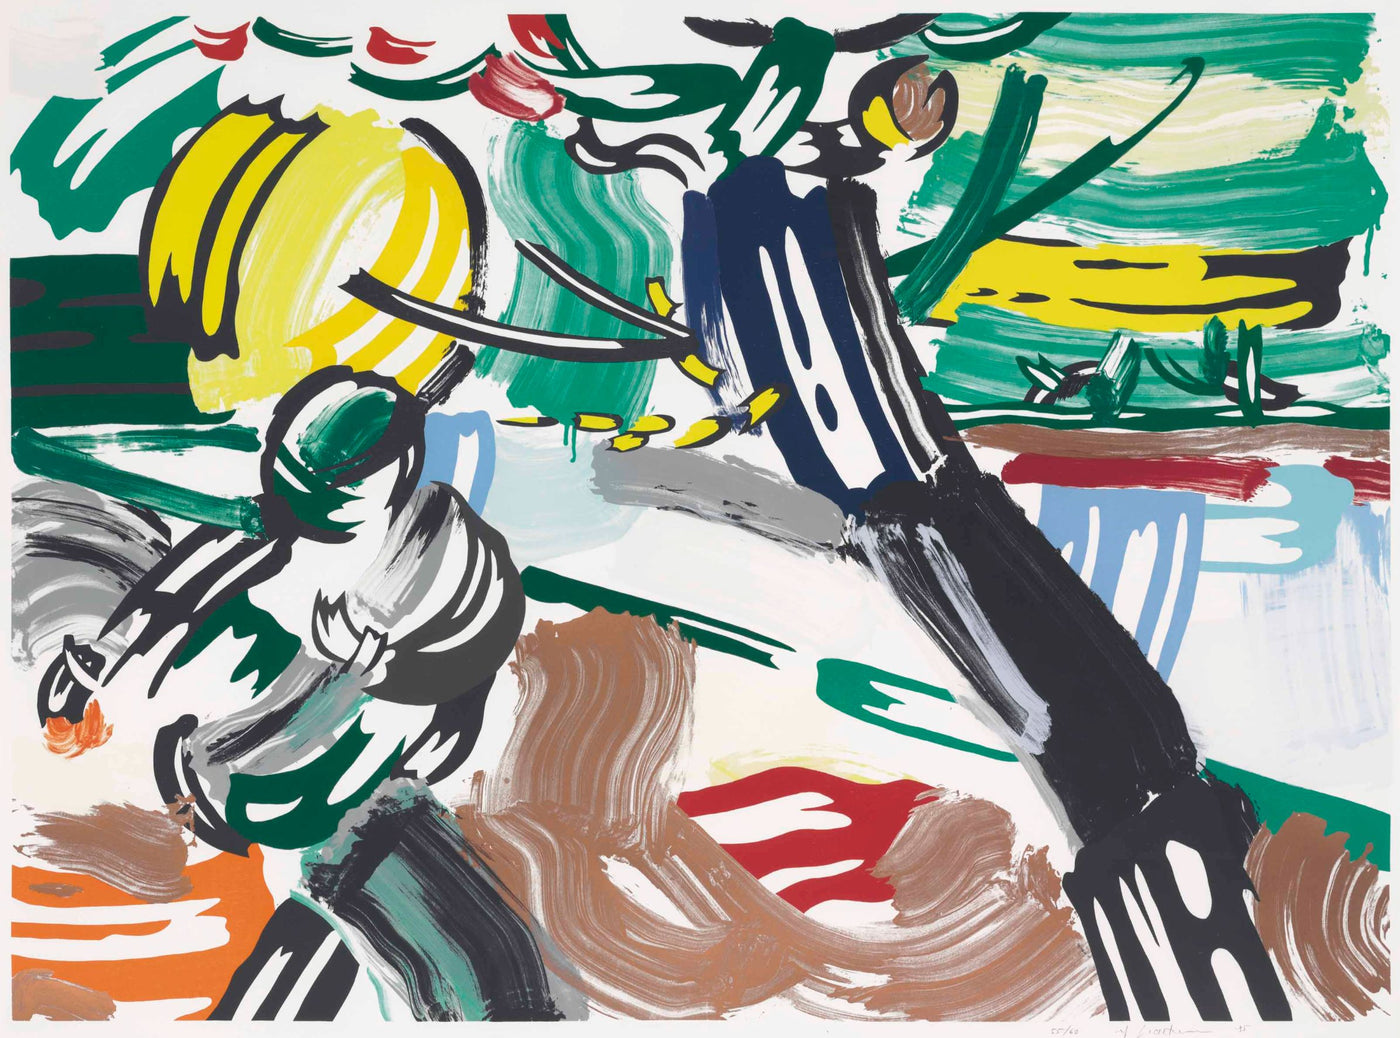 Roy Lichtenstein The Sower (Corlett 211) 1985